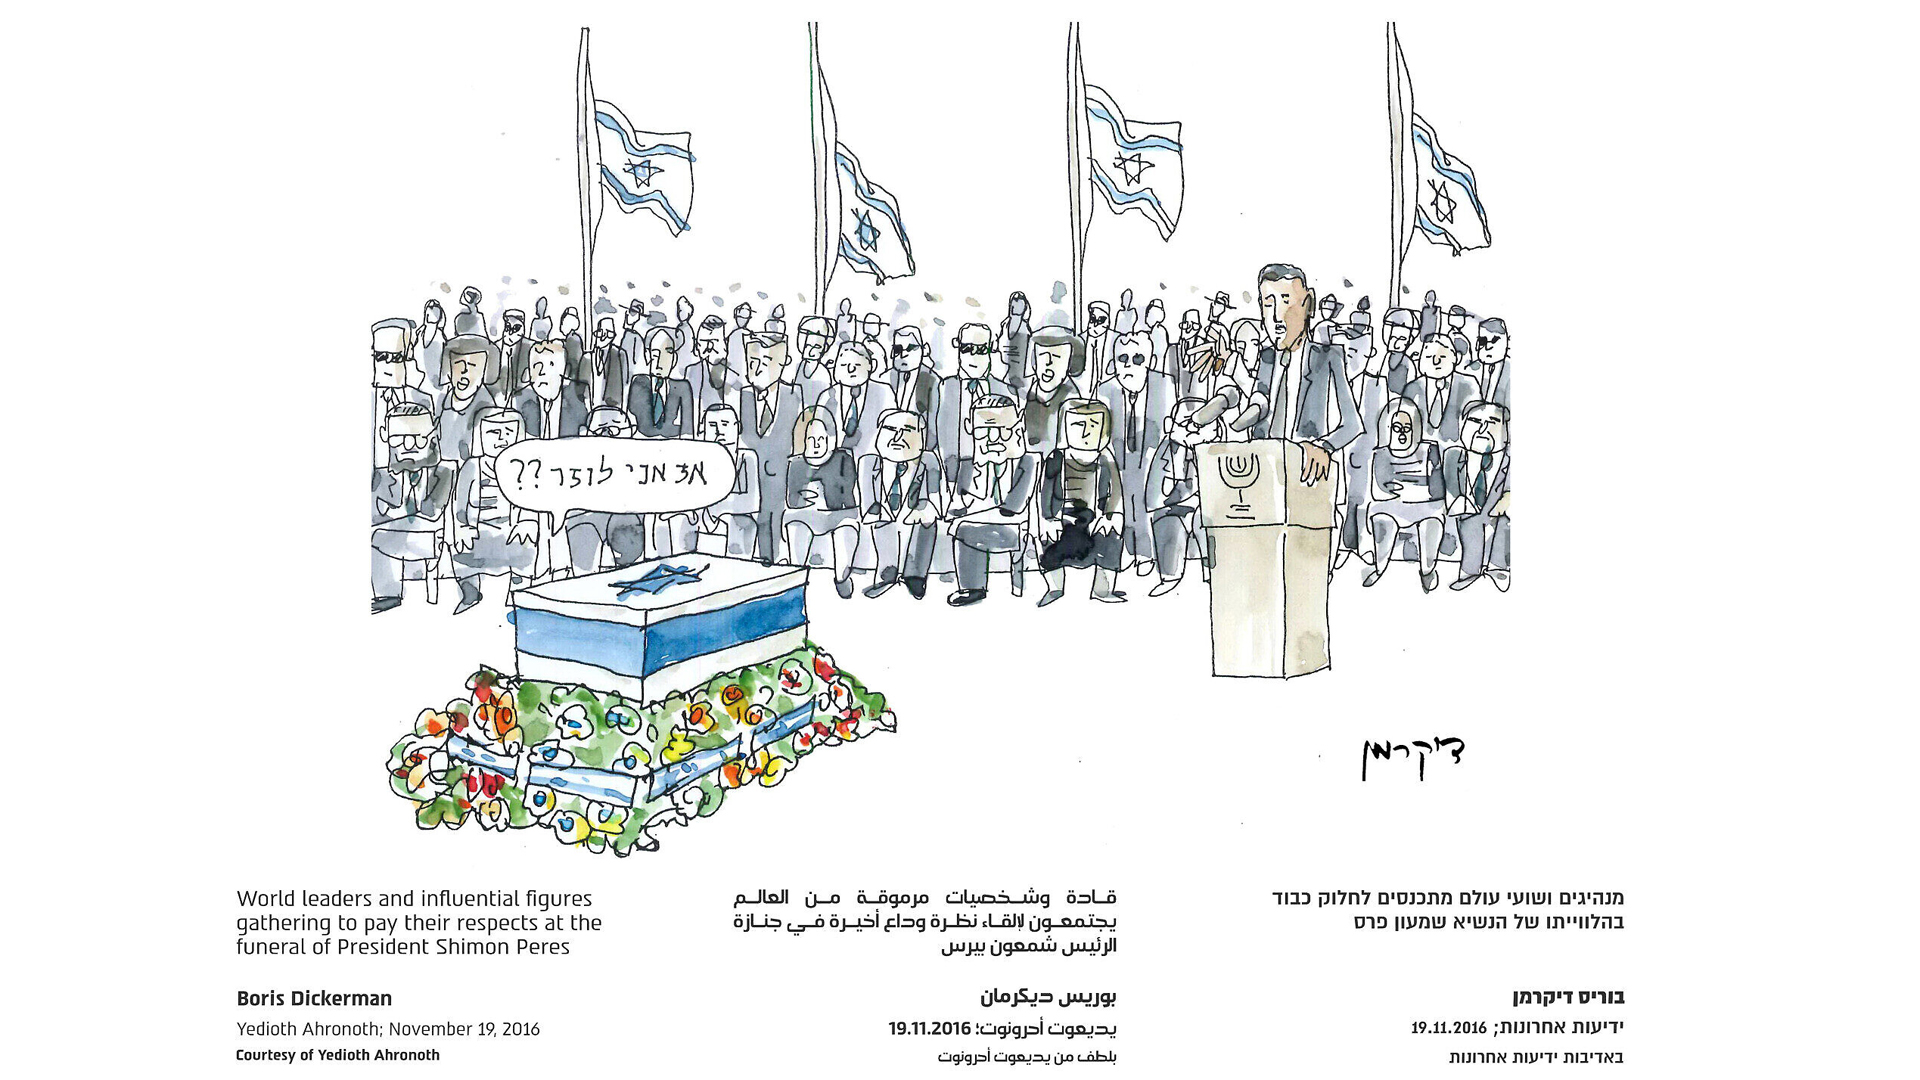 Diese Karikatur von Boris Dickerman zeigt zahlreiche Staatsoberhäupter und Regierungschefs, die Israels Staatspräsidenten Schimon Peres die letzte Ehre erweisen. Dieser fragt aus dem Sarg heraus: „So, ich bin also ein Verlierer?“. Es wird darauf angespielt, dass Peres von seinen Gegnern lange als politischer Versager bezeichnet wurde, weil er keine Wahl gewann.